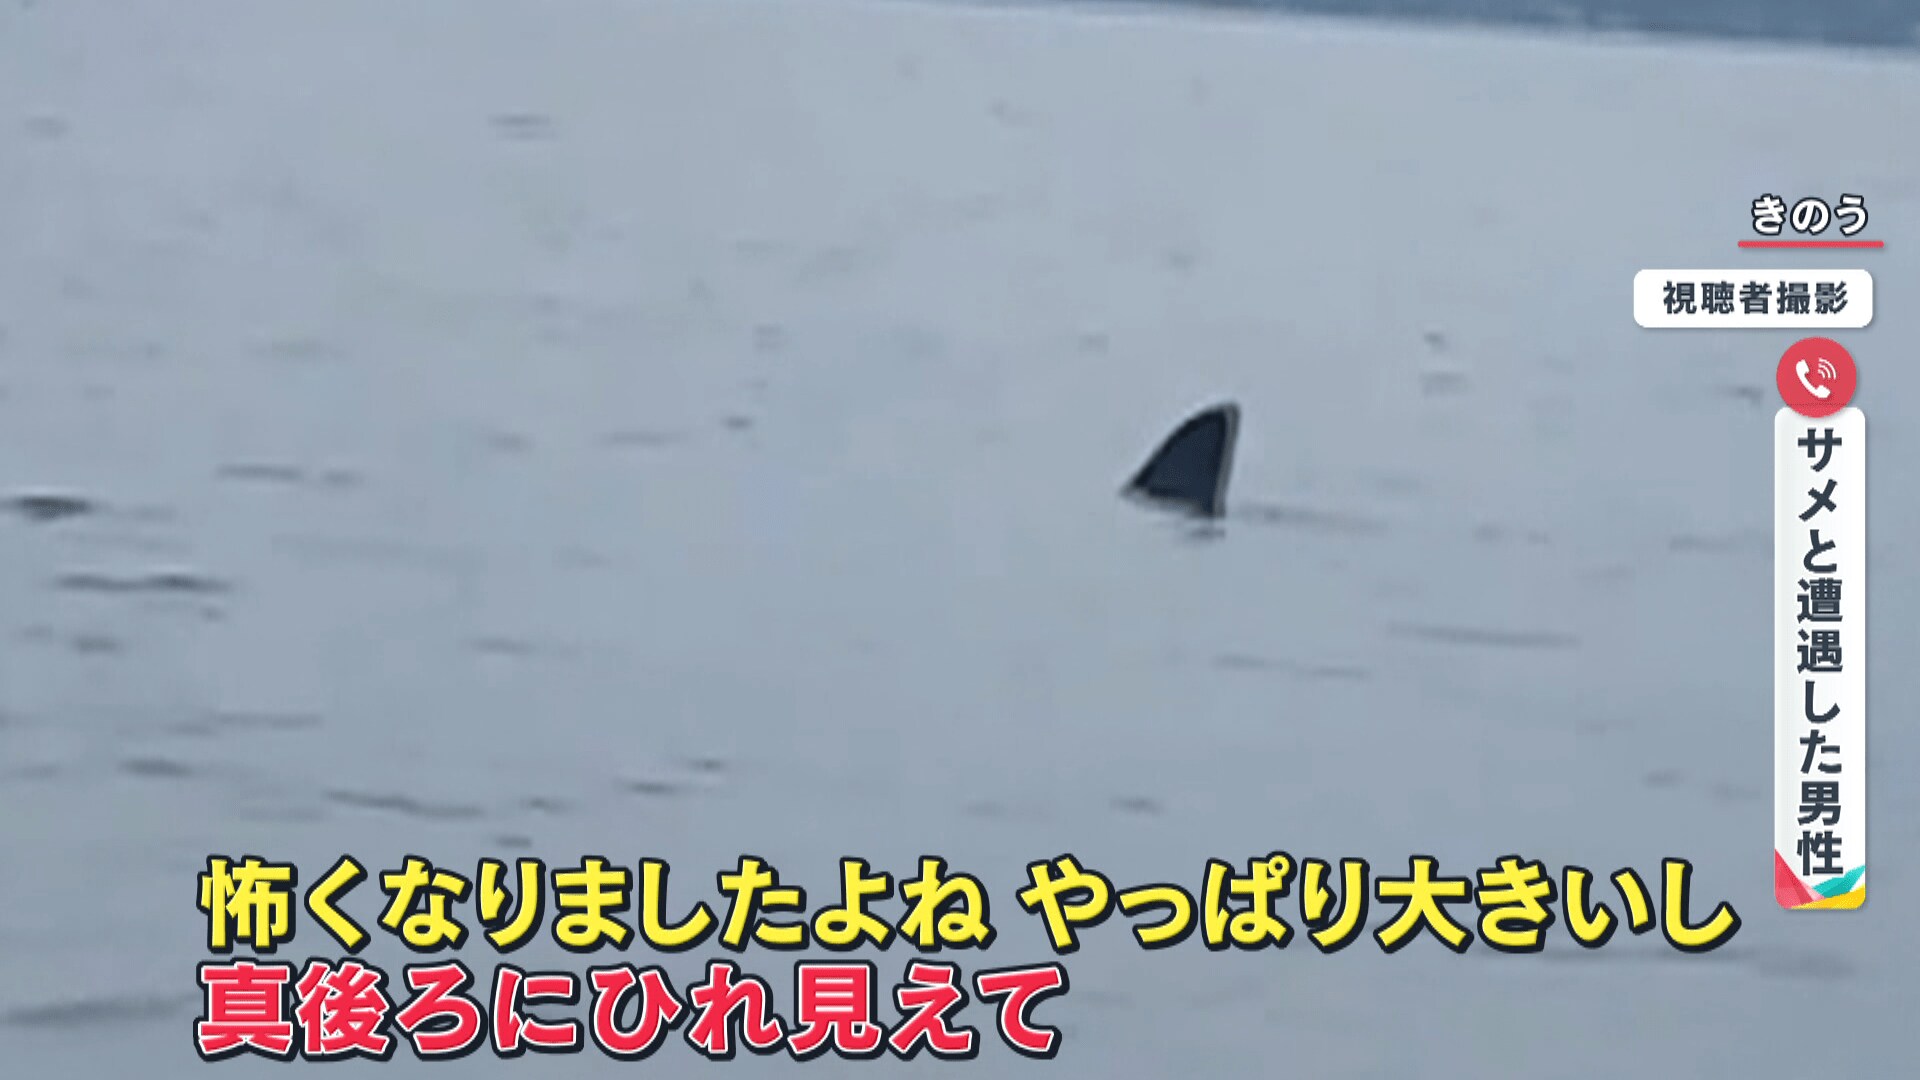 こわ でけえよ 海面に背びれ カヤック横にメジロザメ 新潟県で撮影者語るジョーズ遭遇の瞬間 Fnnプライムオンライン Goo ニュース